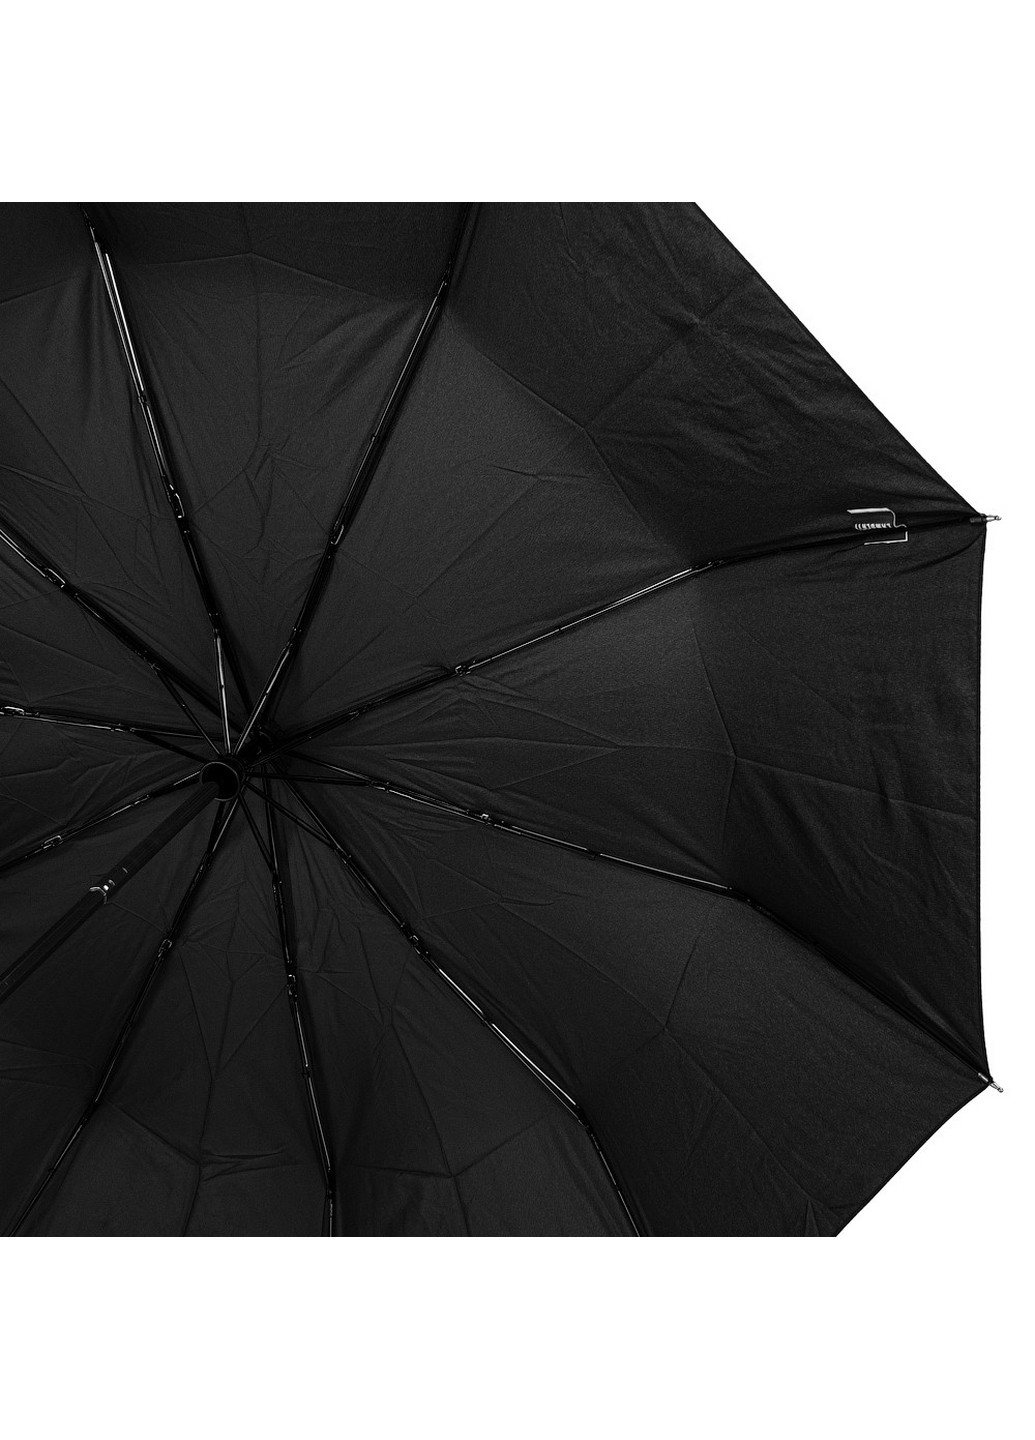 Мужской складной зонт автомат 108 см Lamberti (260330796)